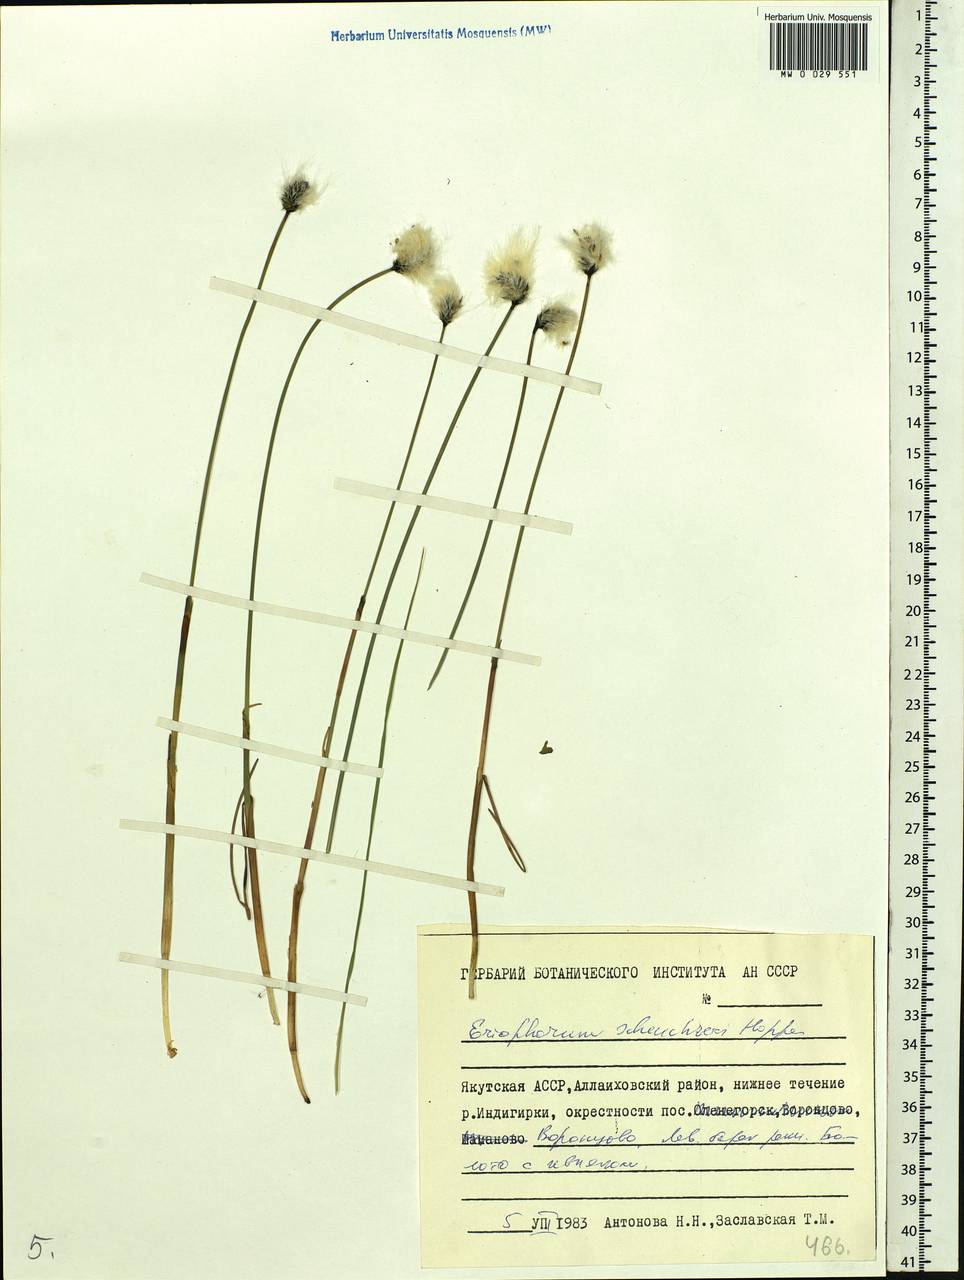 Eriophorum scheuchzeri Hoppe, Siberia, Yakutia (S5) (Russia)